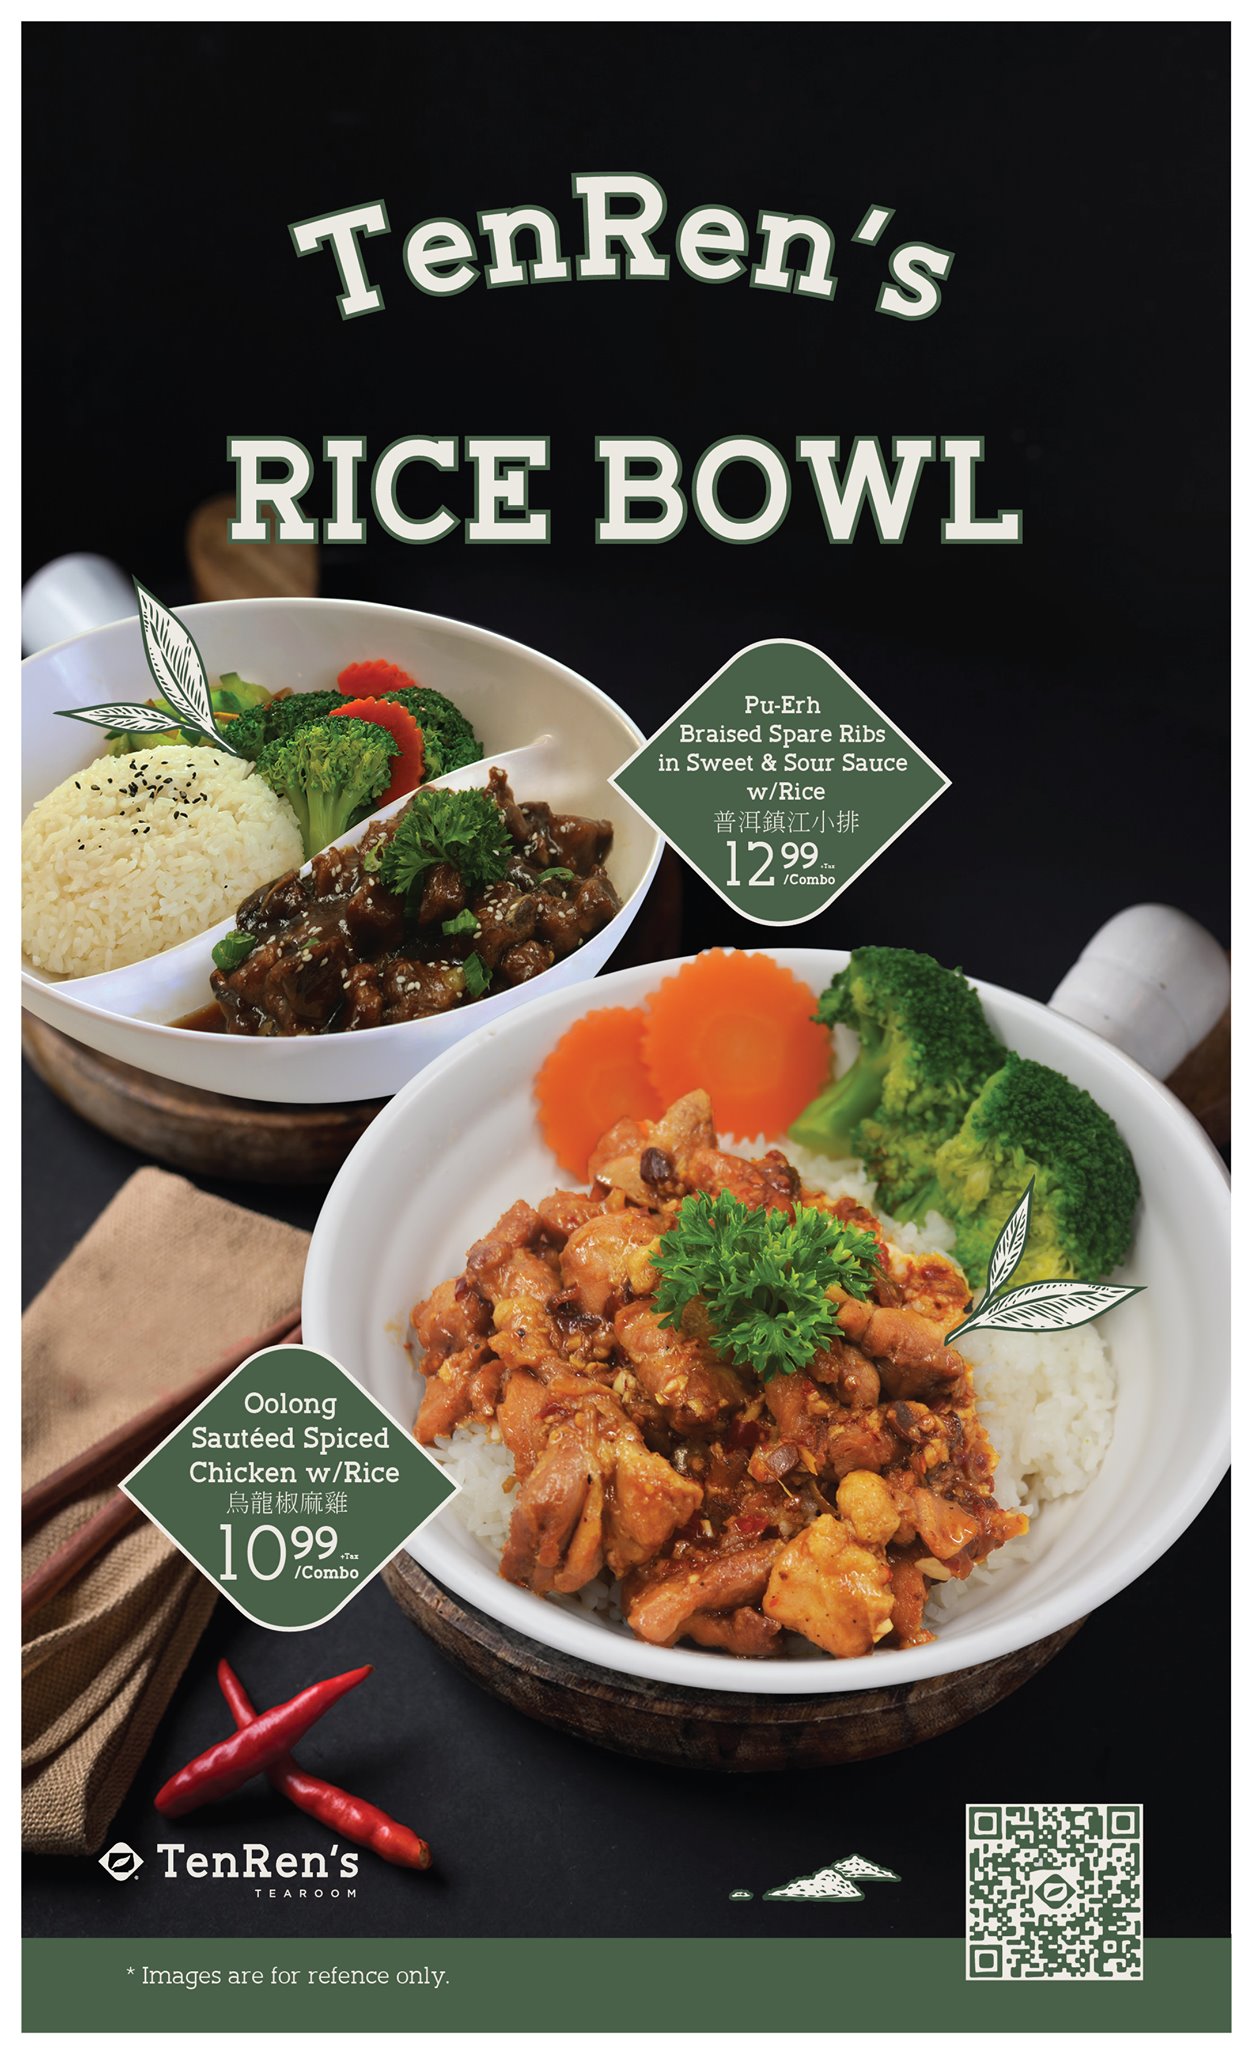 TenRen’s Seasonal Rice Bowl